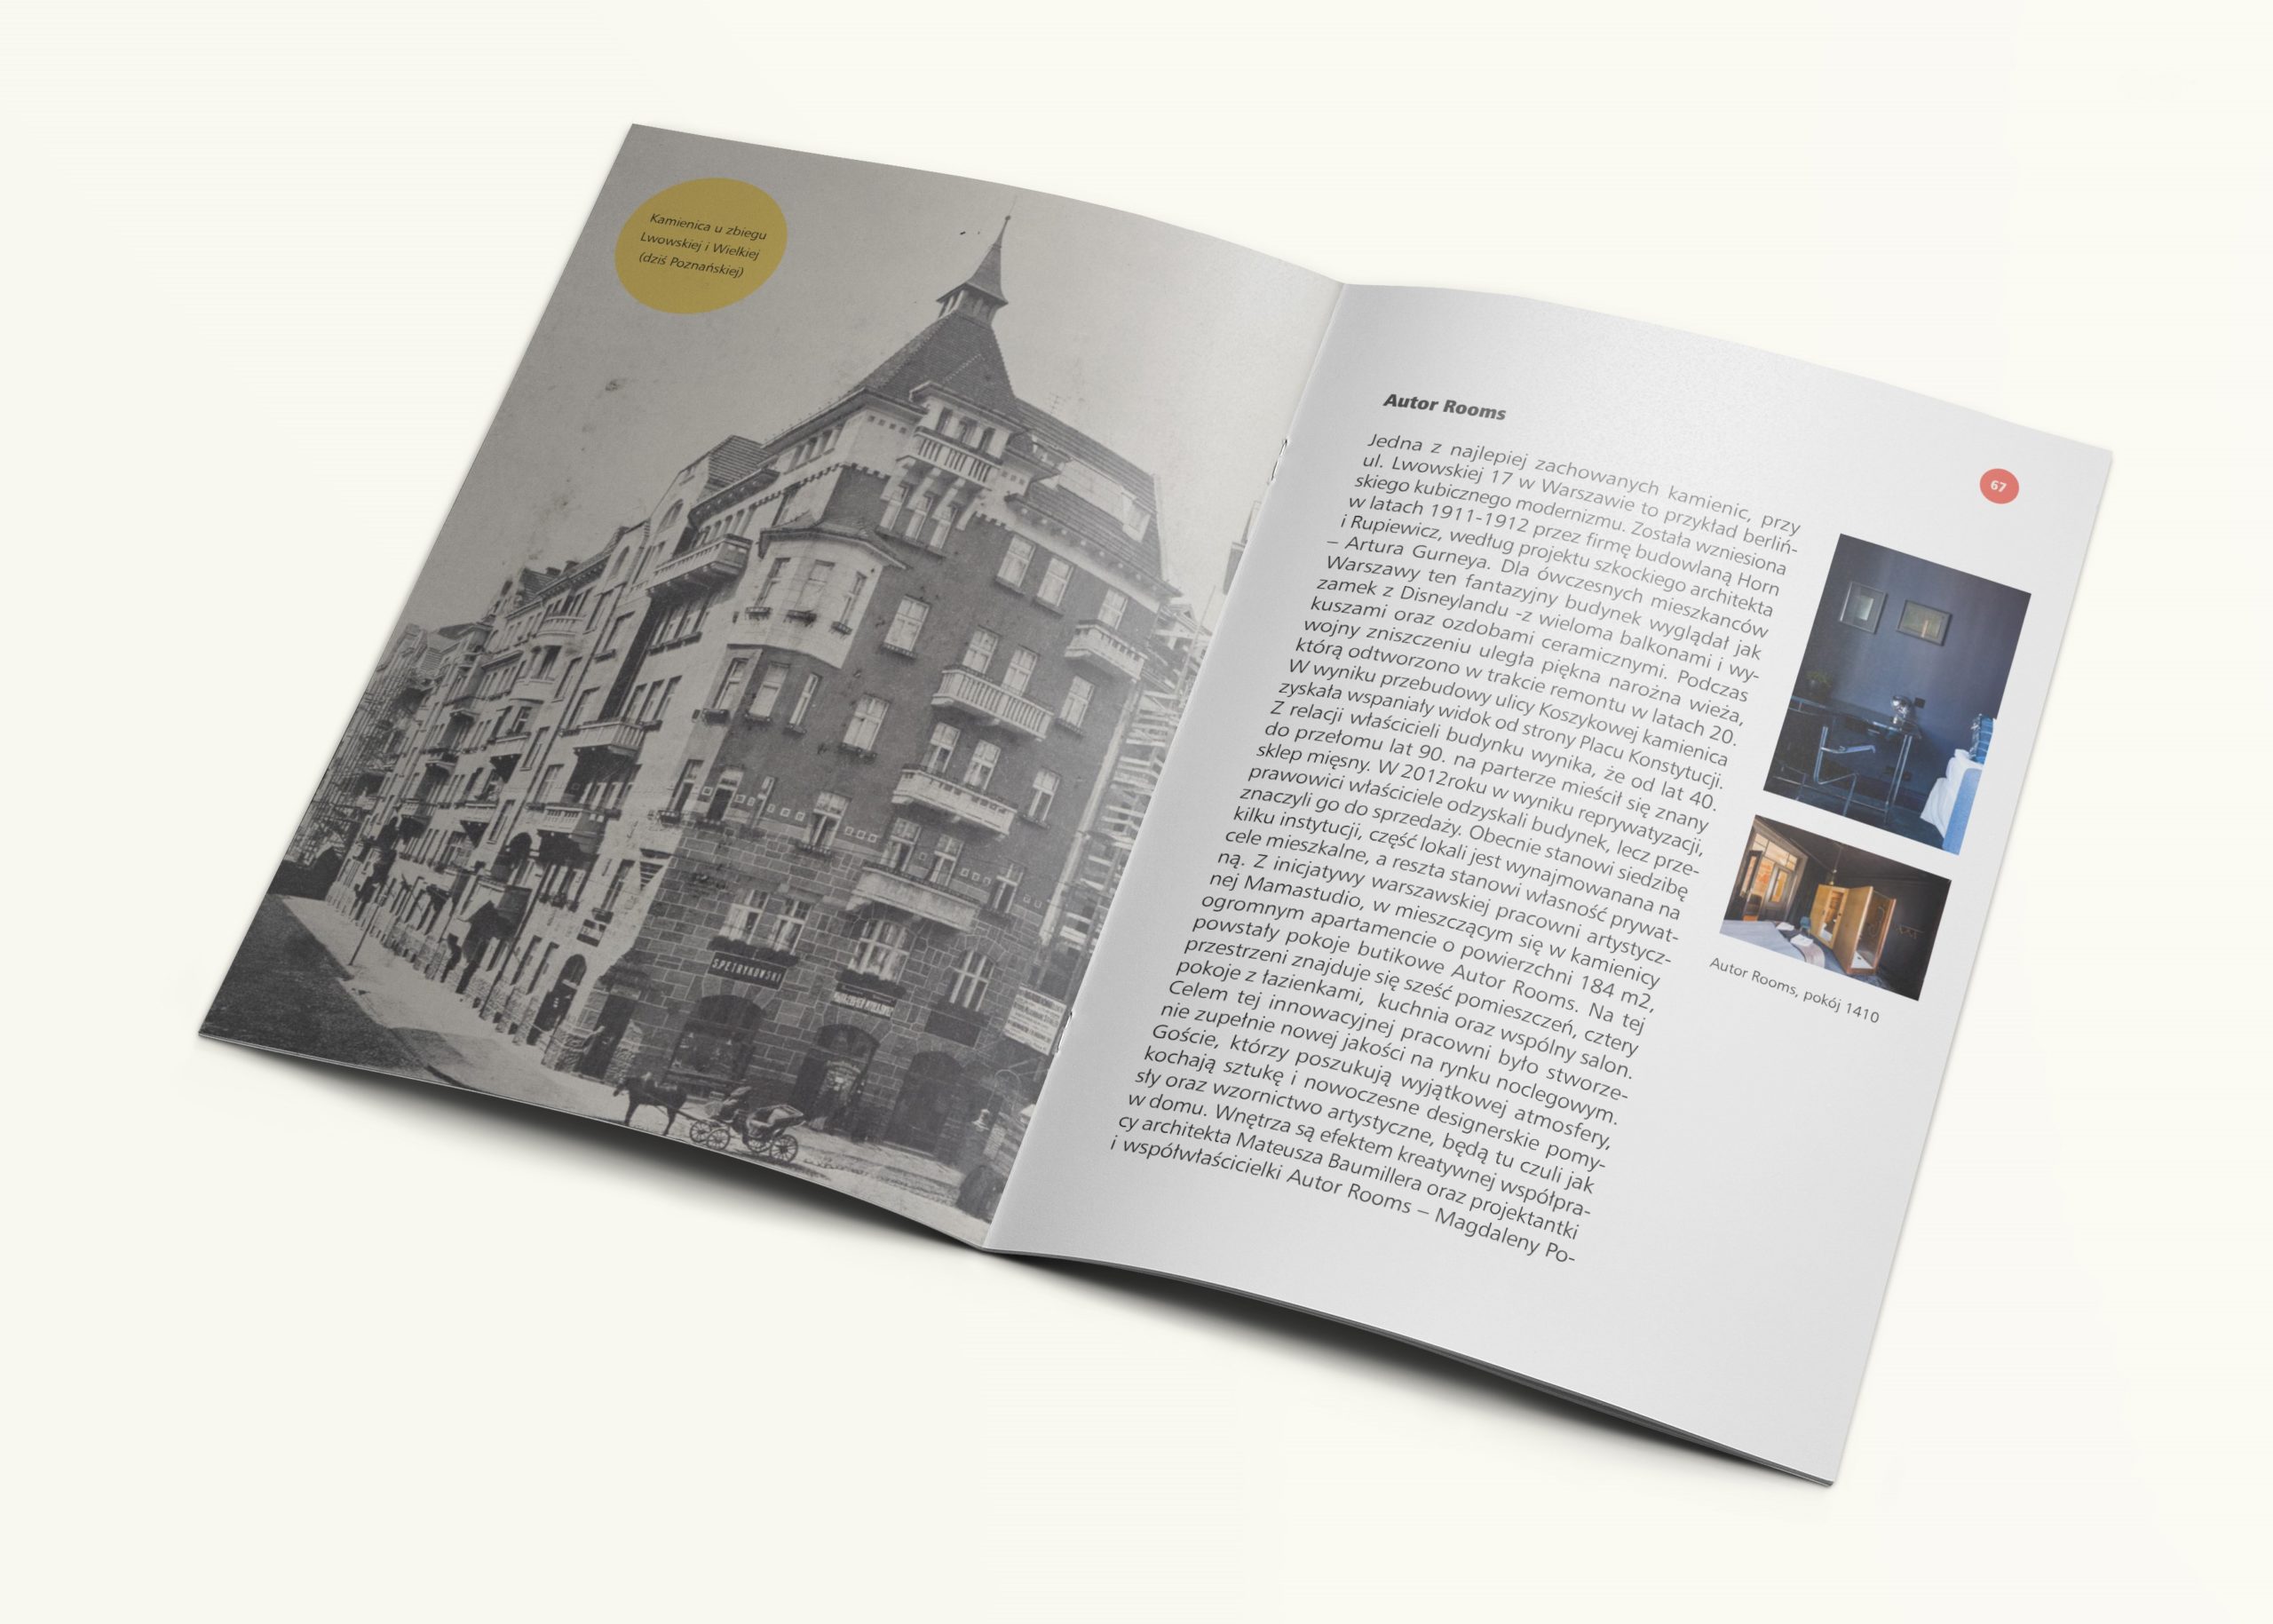 Hotele historyczne, butikowe i apartamenty w obiektach historycznych w Warszawie, projekt graficzny: Jarek Zuzga